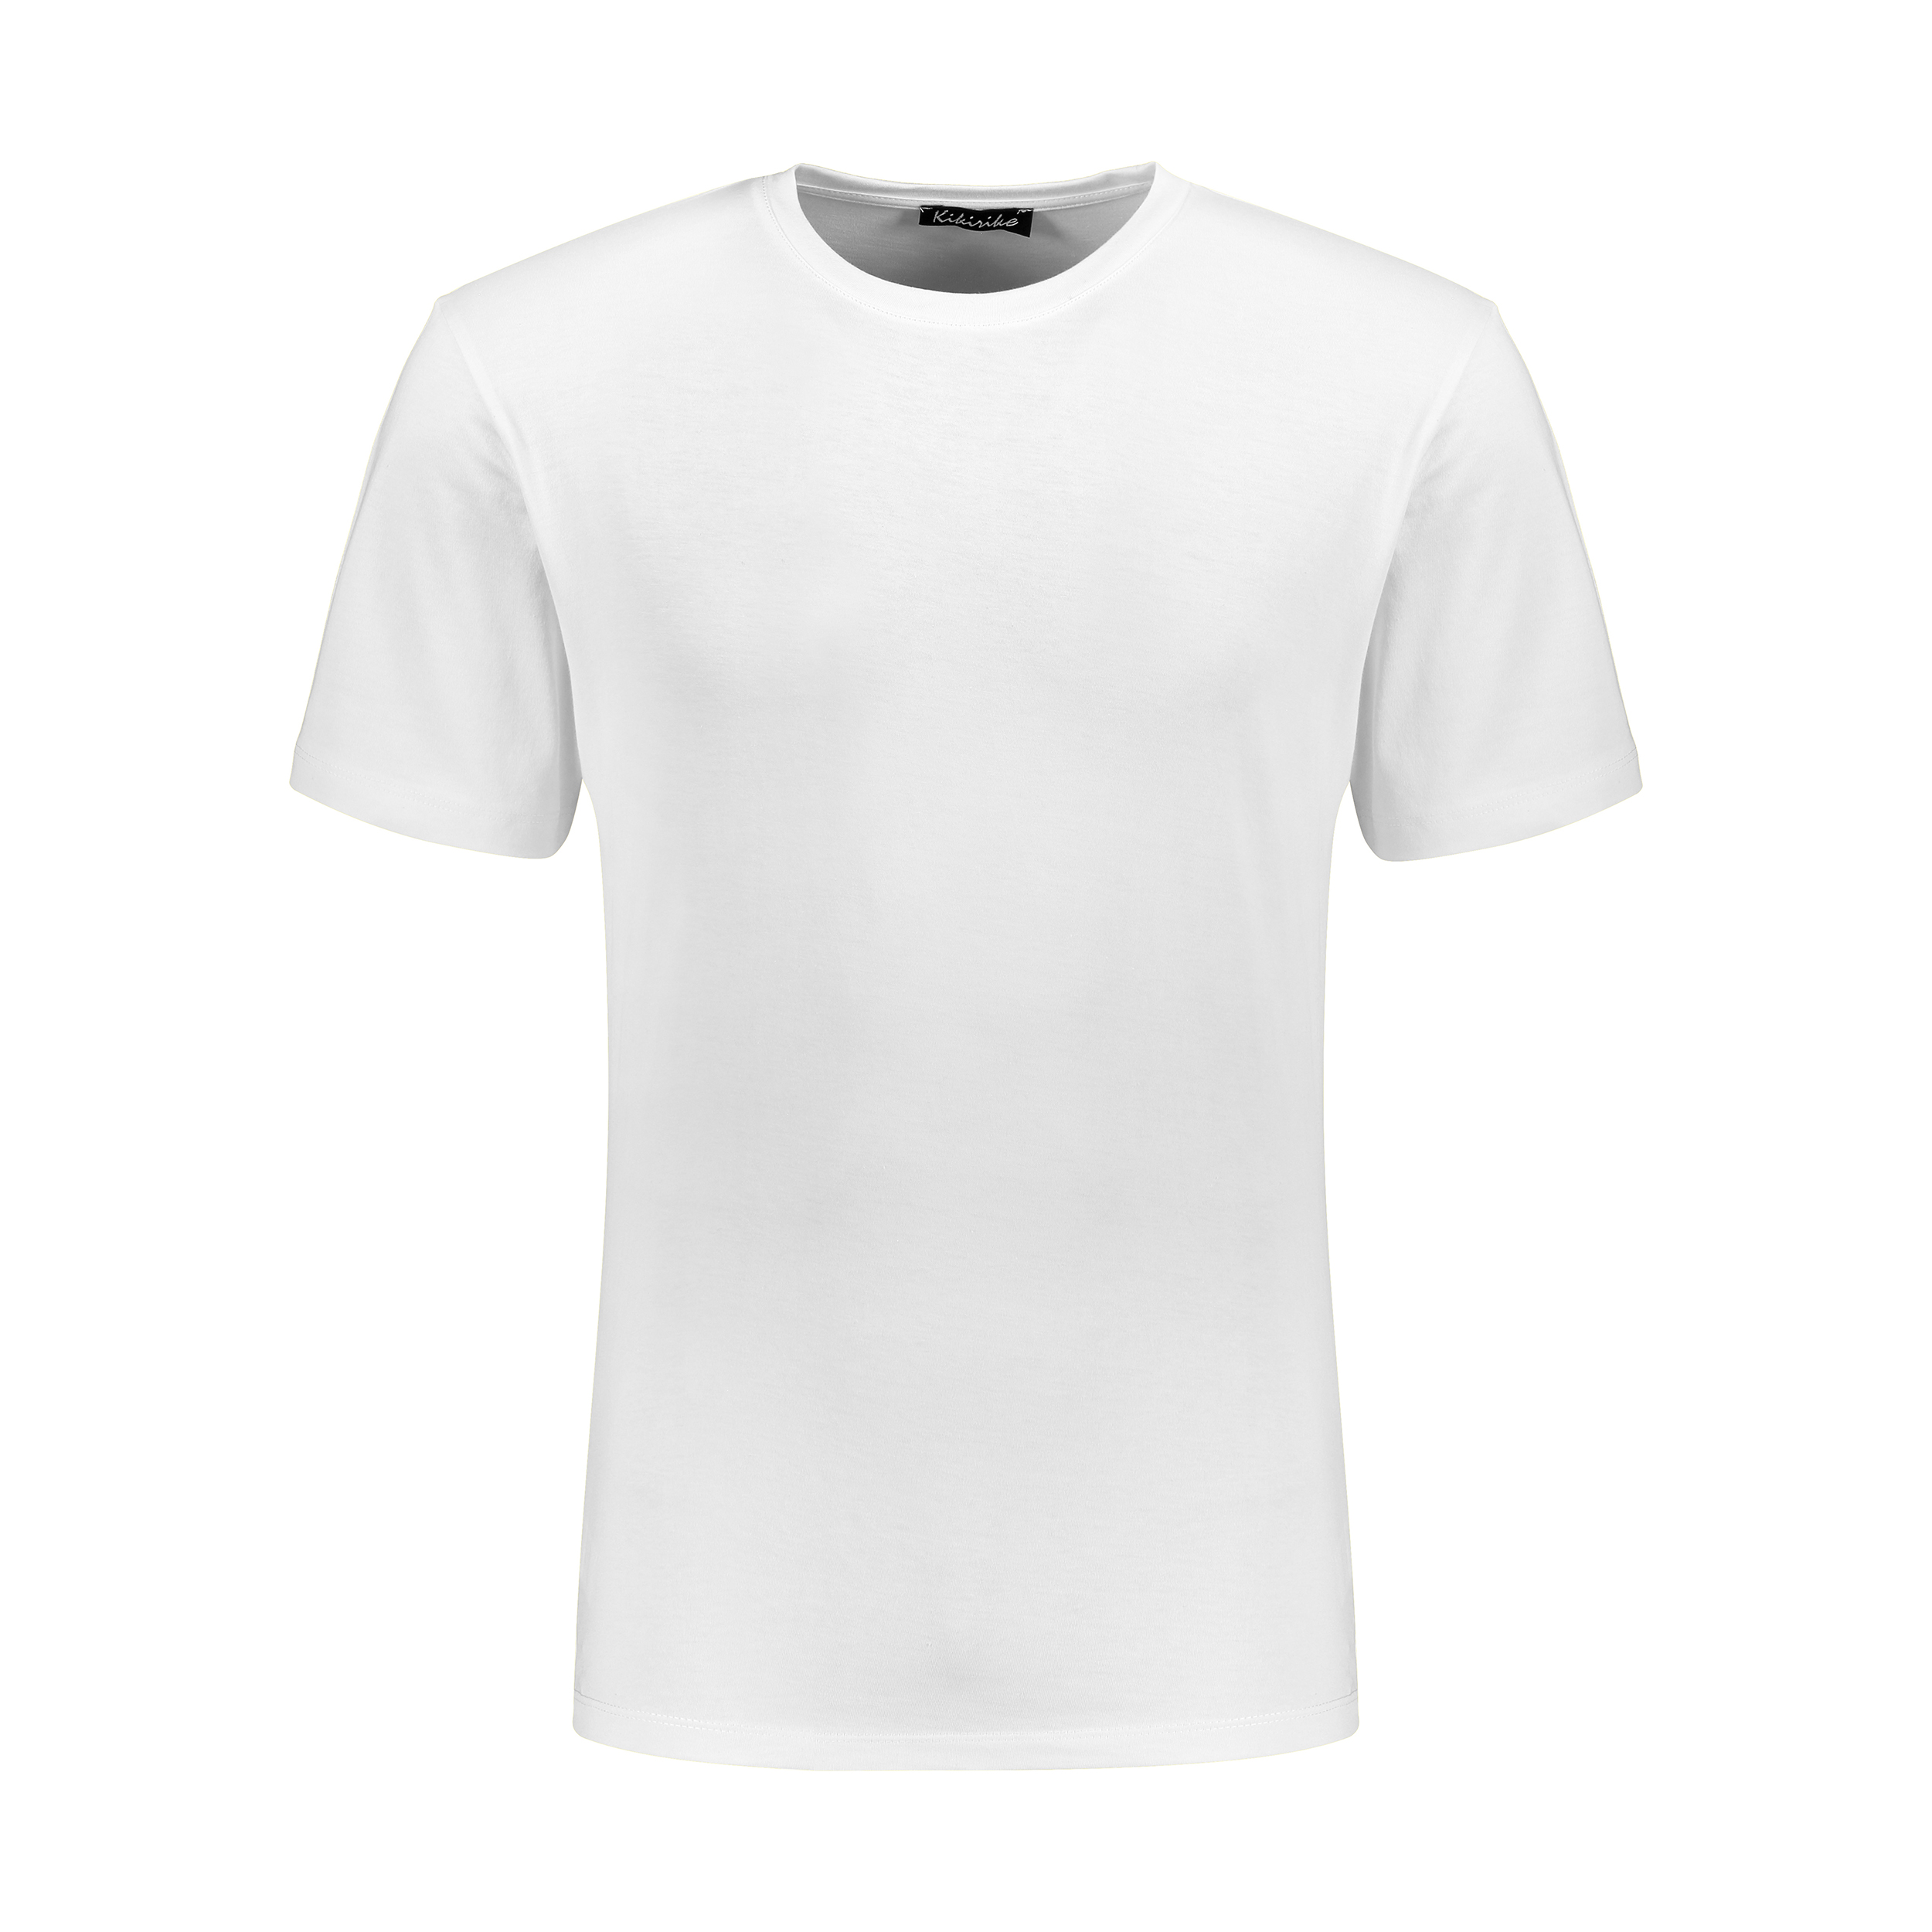 نقد و بررسی تی شرت مردانه کیکی رایکی مدل MBB02807-002 توسط خریداران